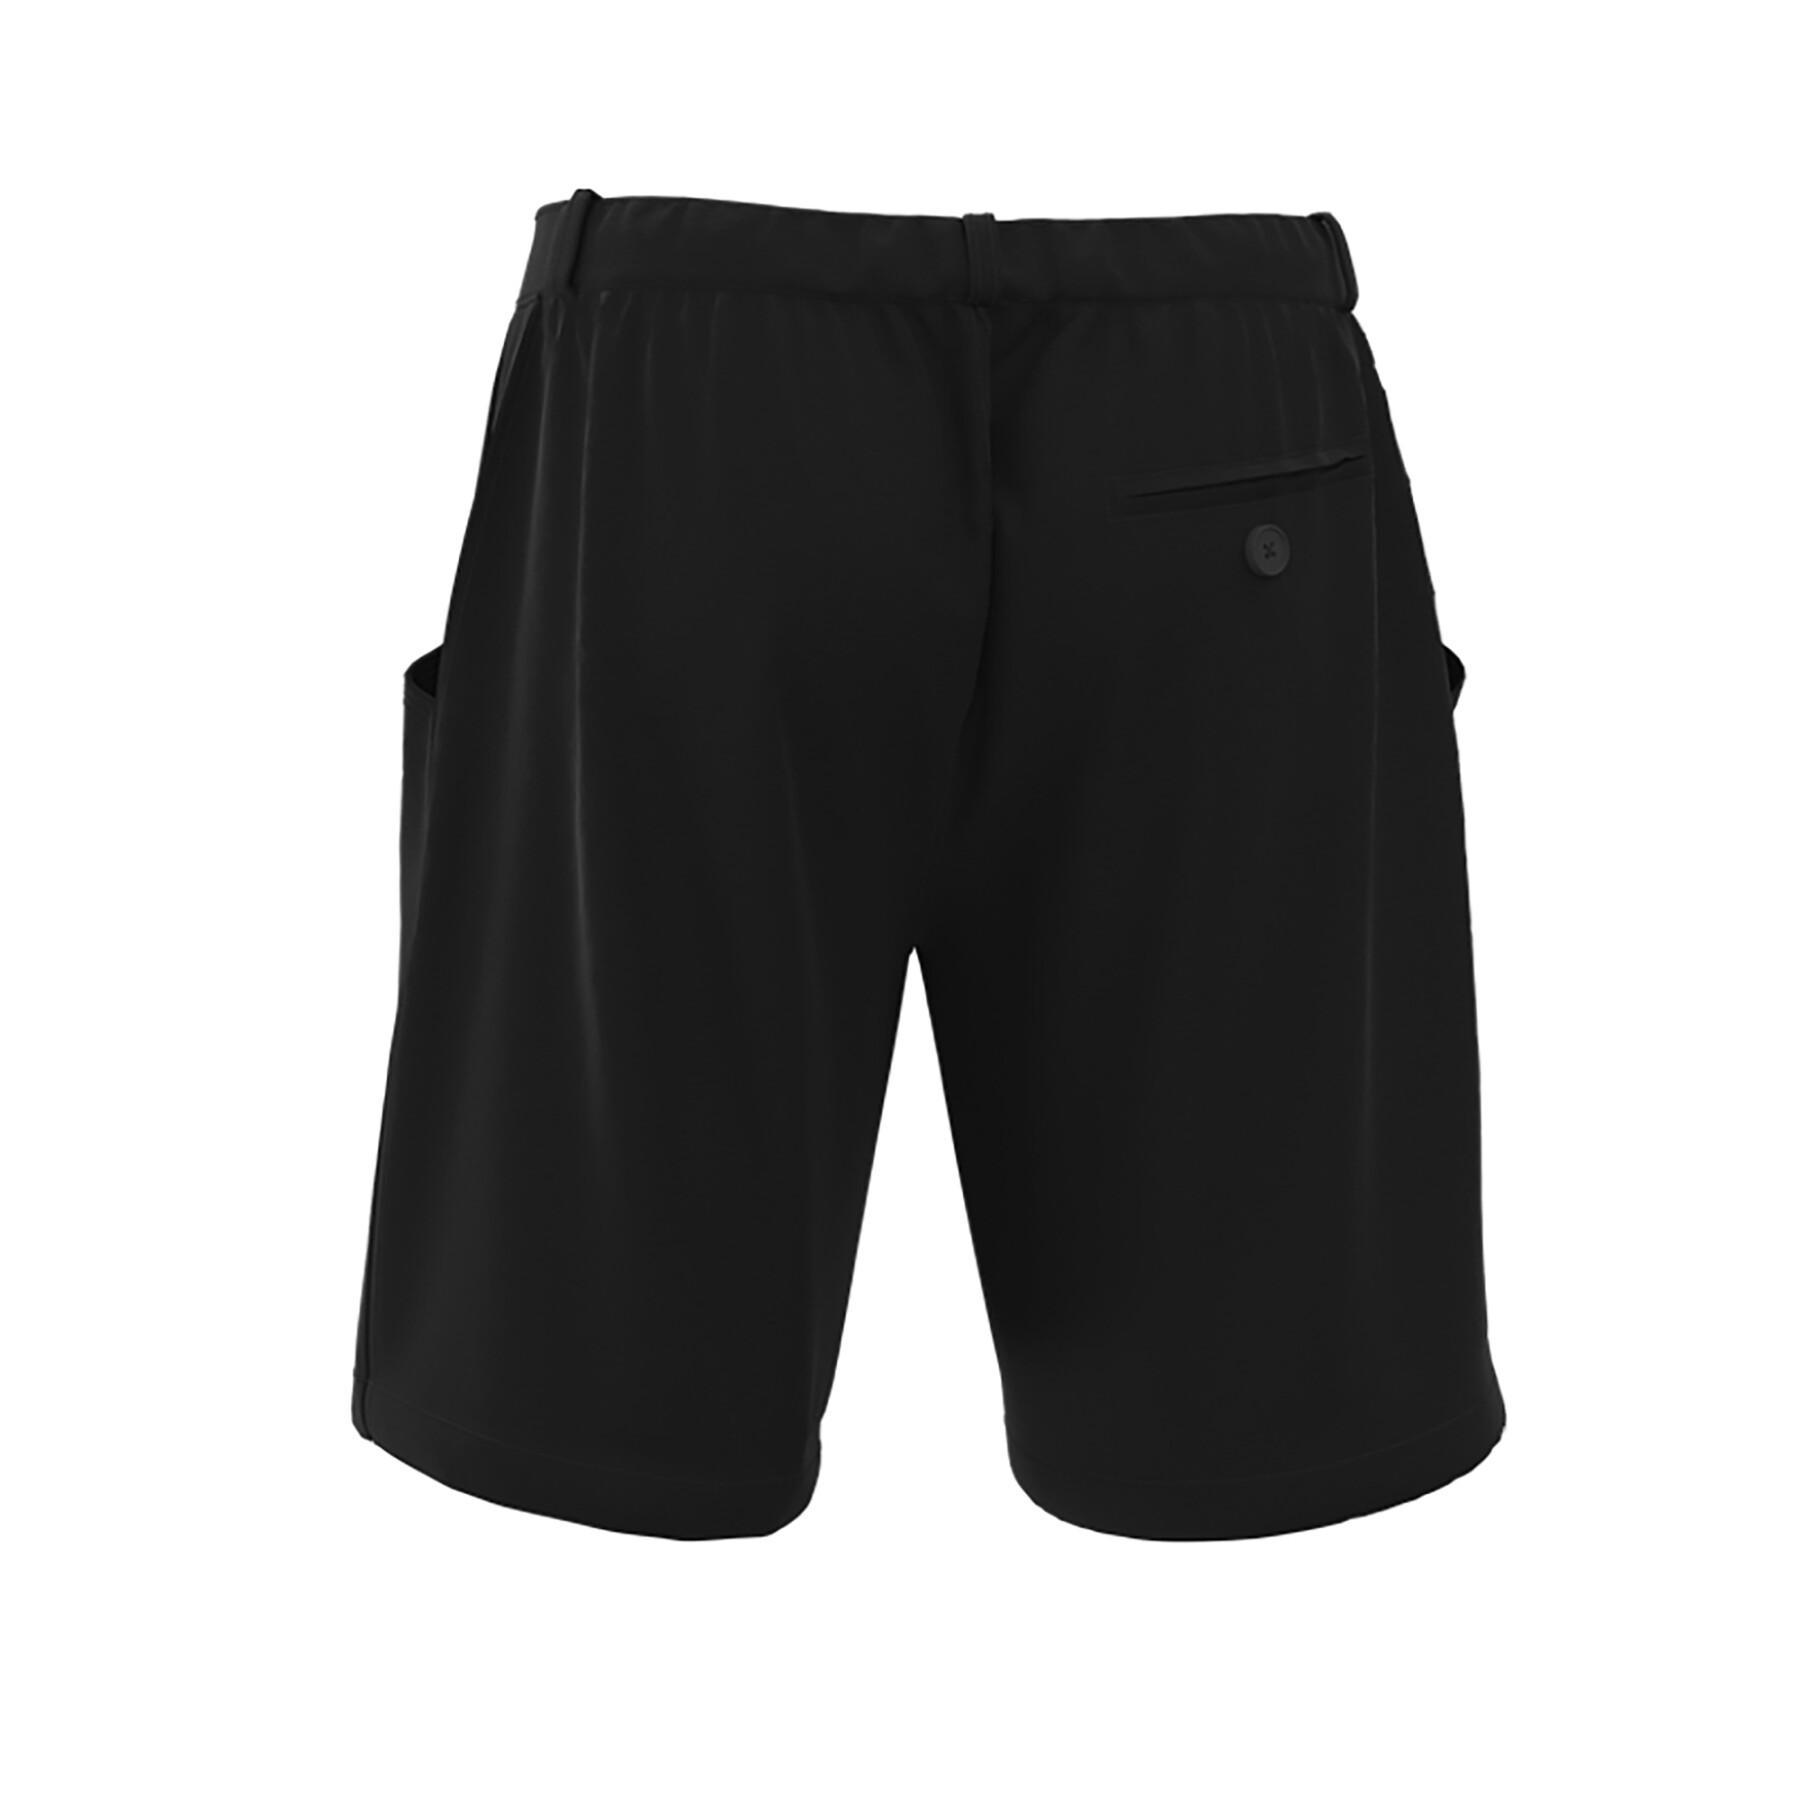 Bermuda shorts Errea Luca